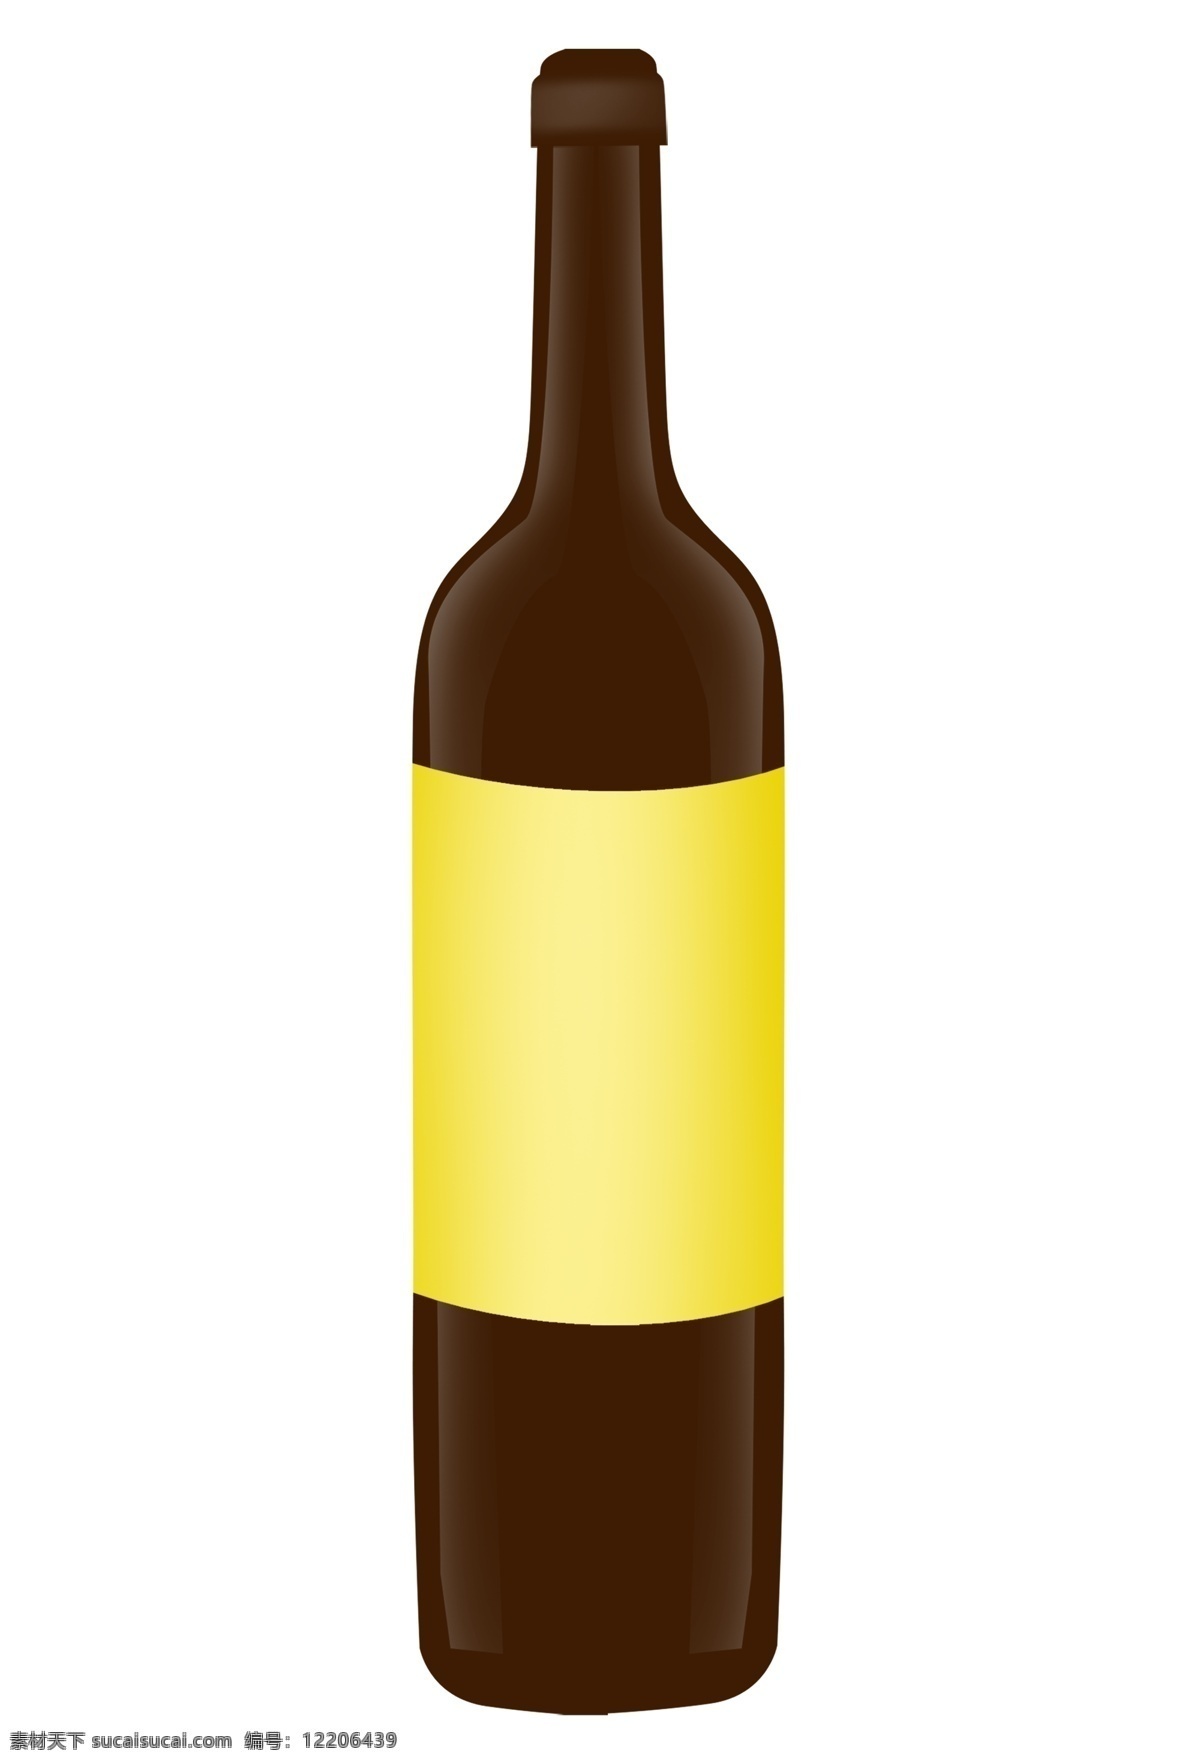 金色 修饰 红酒 瓶 插画 红酒瓶 一瓶红酒 葡萄红酒 葡萄酒 酒瓶插图